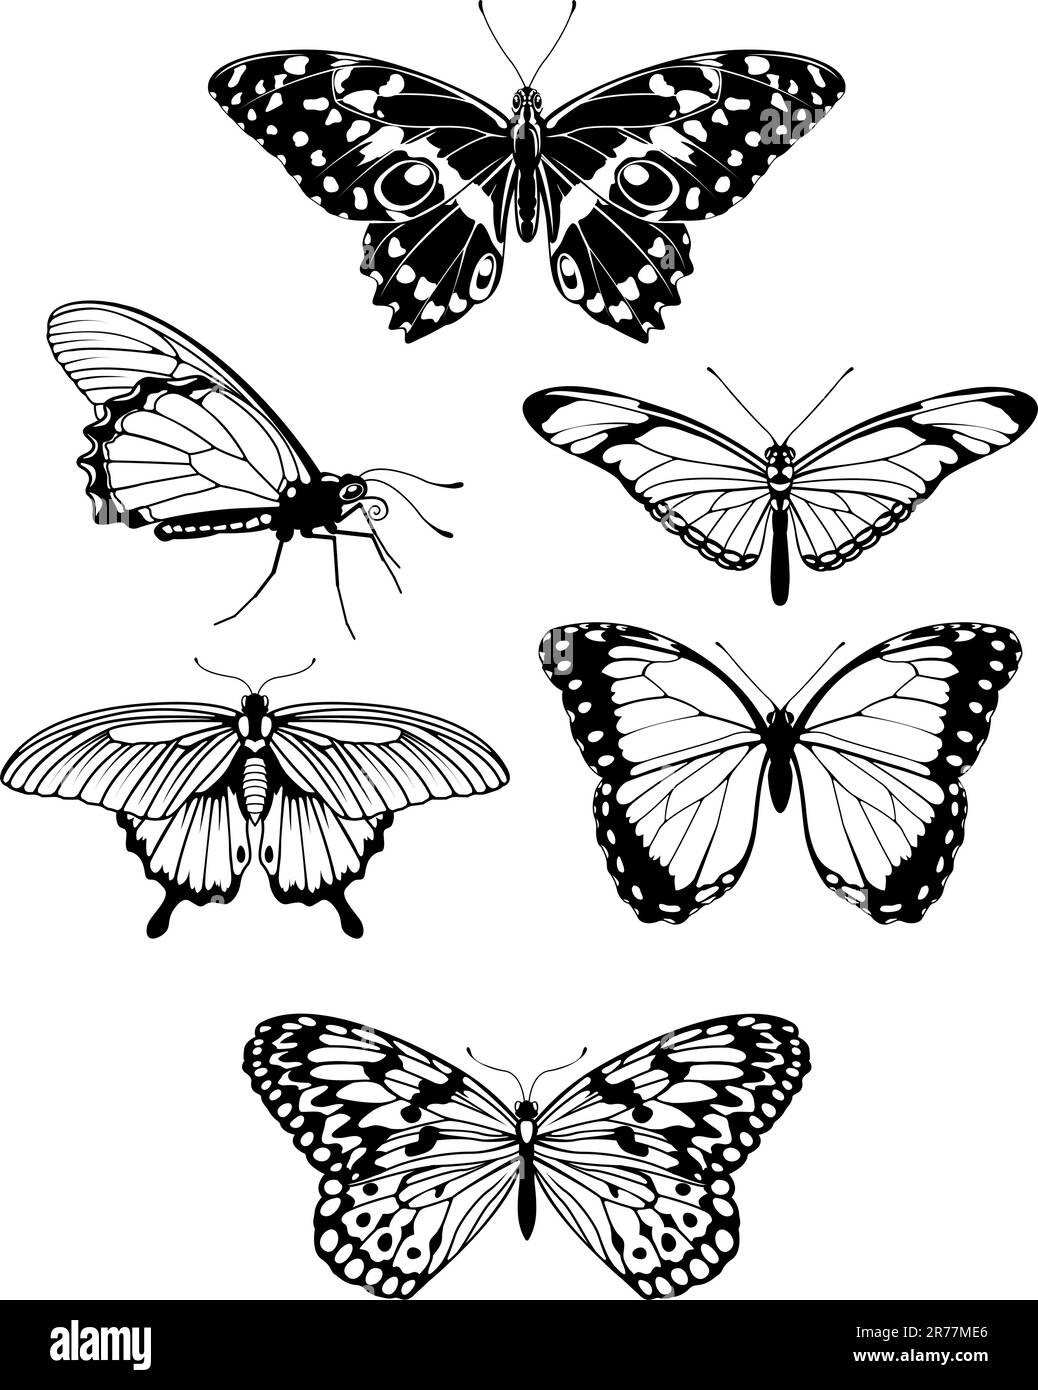 Ein Satz wunderschöner, stilisierter Schmetterlingsformen Stock Vektor